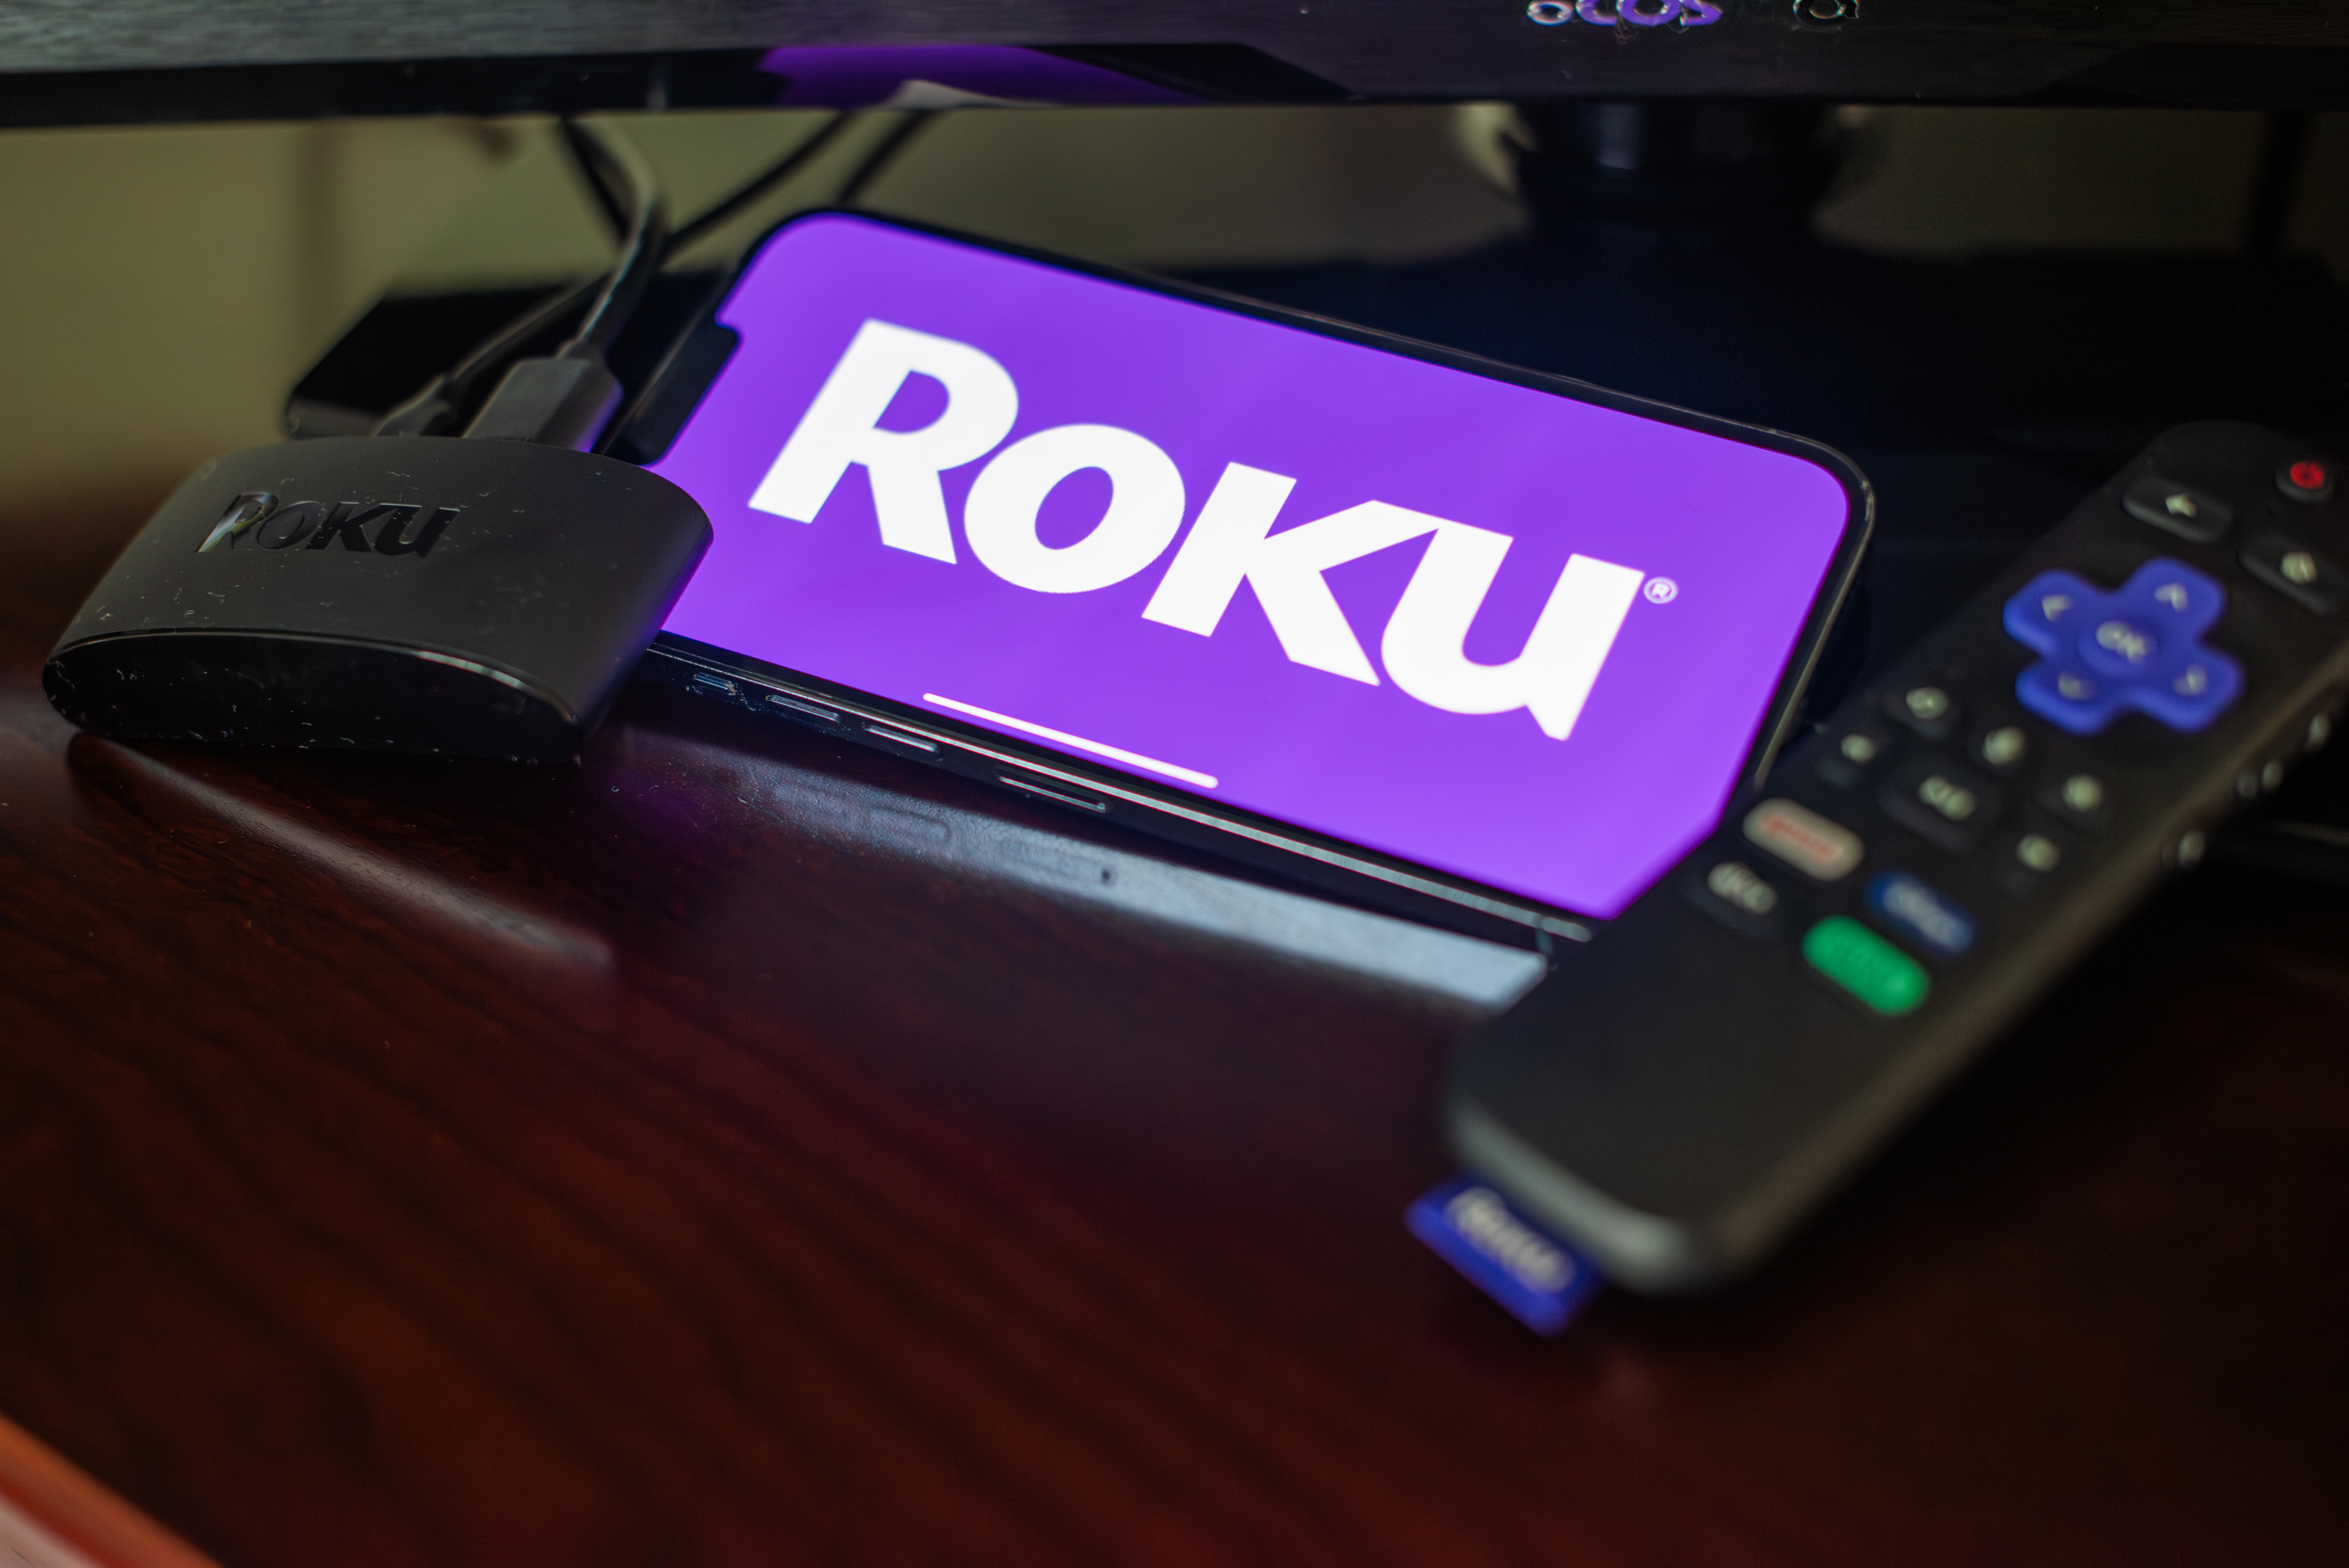 Como los canales no se pueden descargar directamente en su dispositivo Roku, debe agregarlos a su cuenta a través de su navegador web